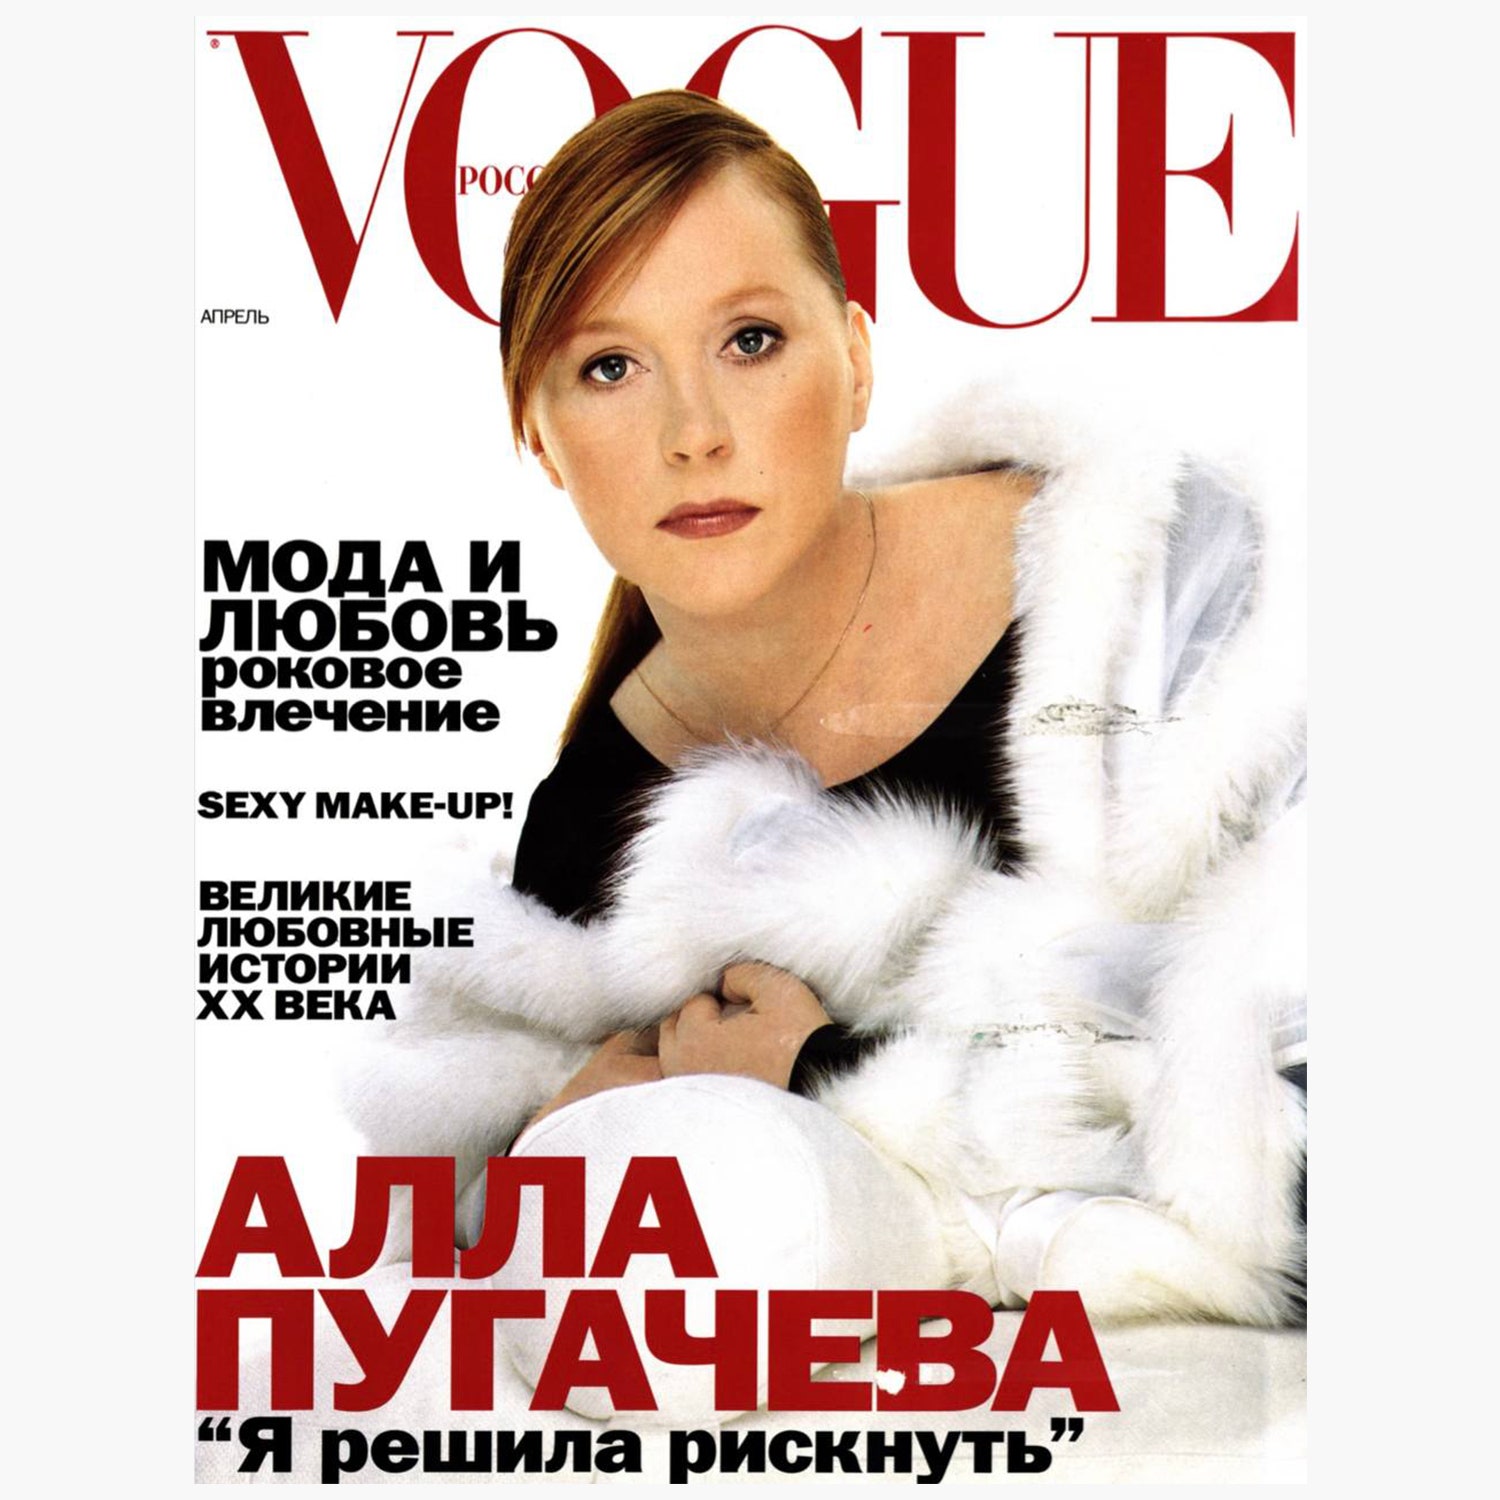 Обложка Vogue Россия апрель 1999